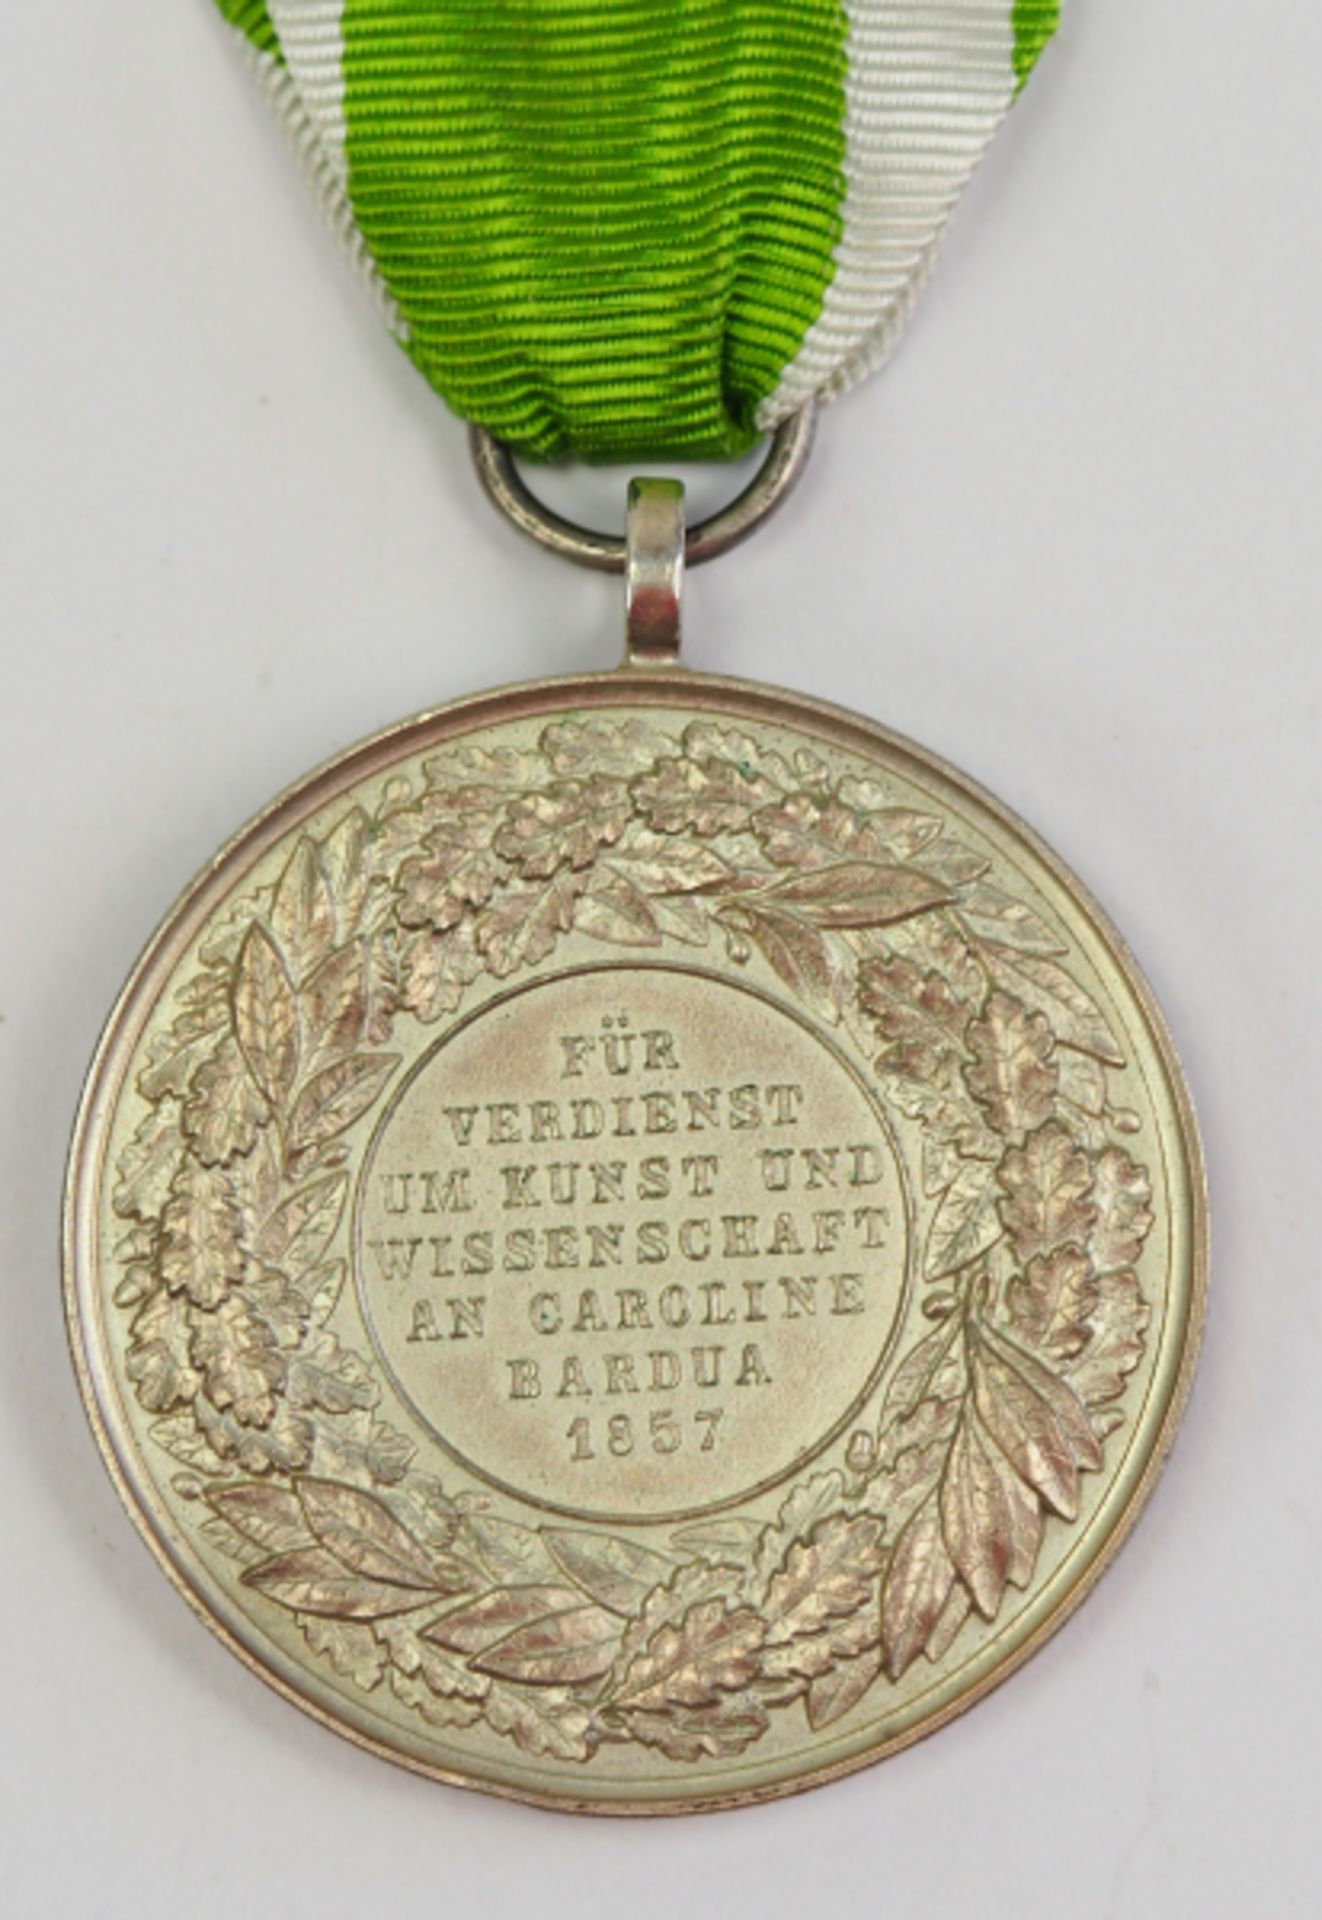 Anhalt: Medaille für Verdienste um Kunst und Wissenschaft - Caroline Bardua 1857.Versilberter und - Image 3 of 4